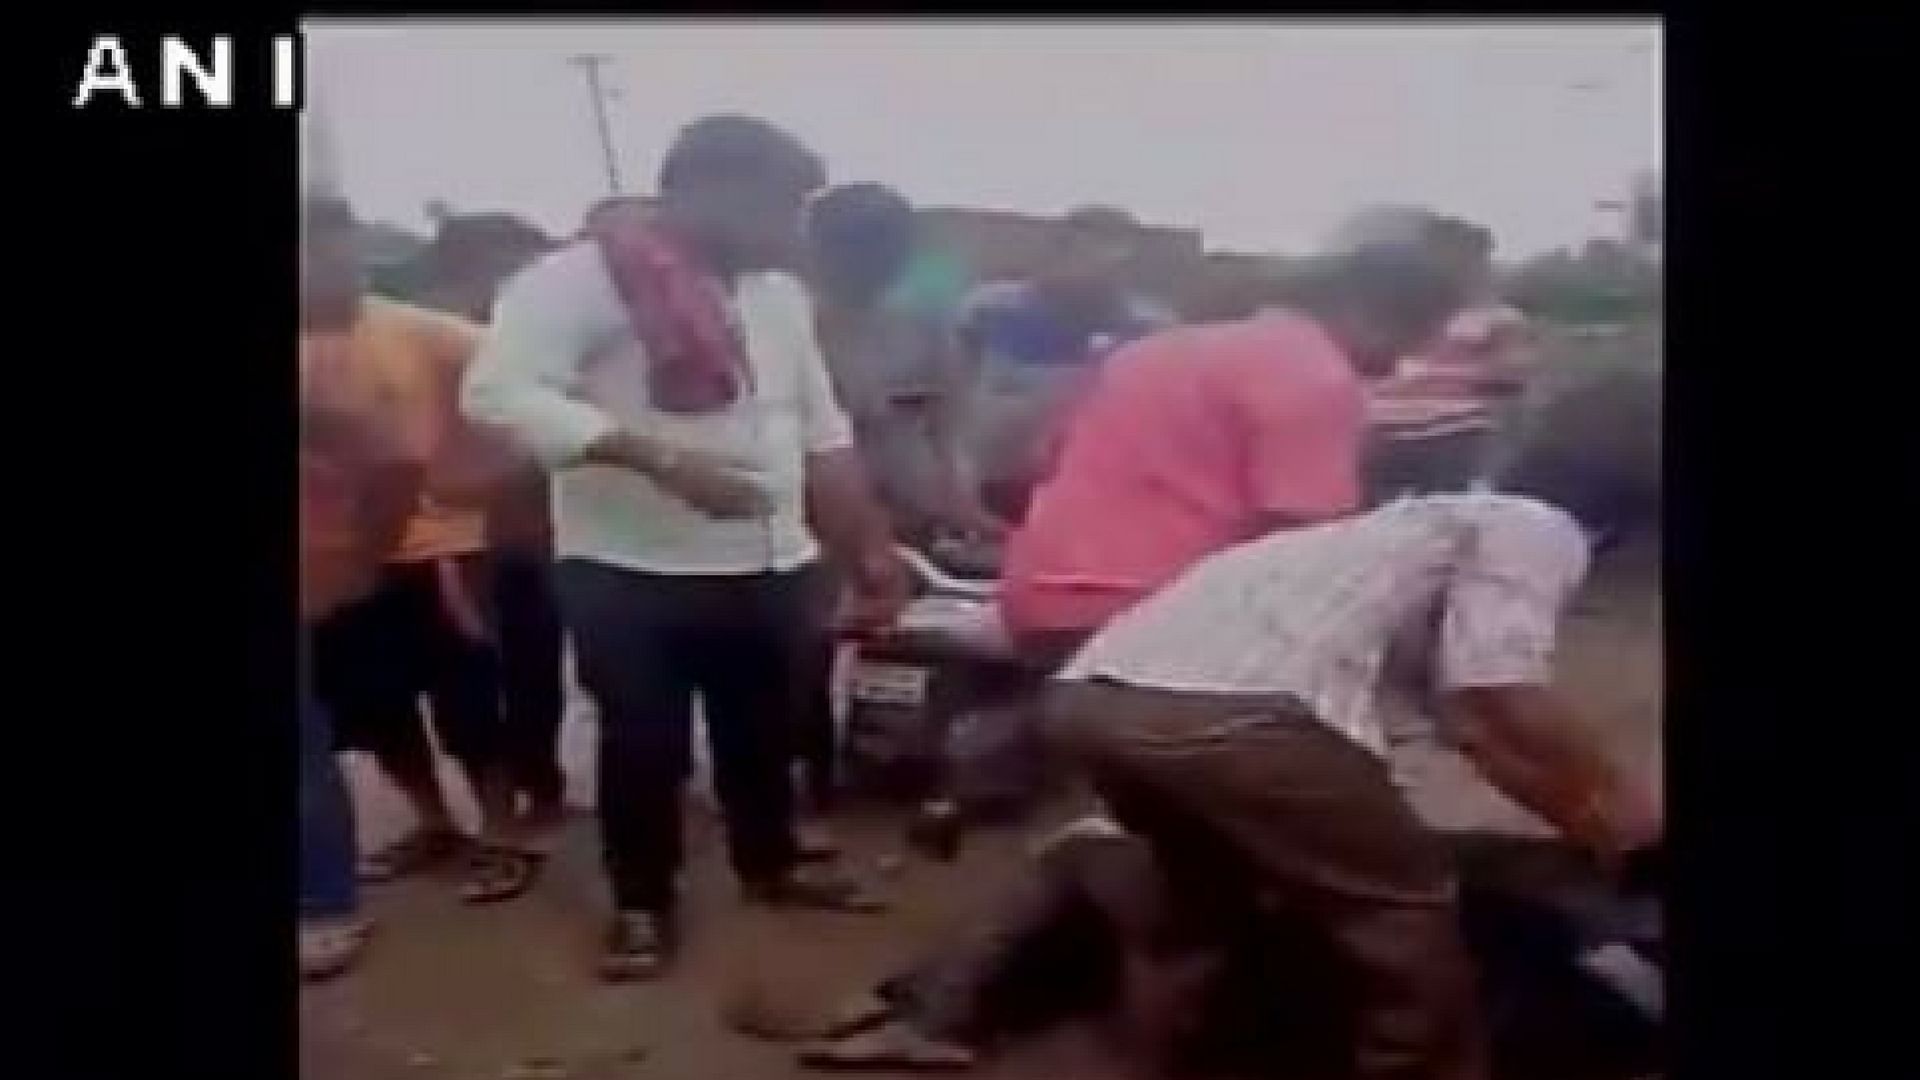 नागपुर के भारसिंगी गांव में बुधवार को बीफ ले जाने के आरोप में भीड़ ने एक यूवक की बेरहमी से पिटाई की 